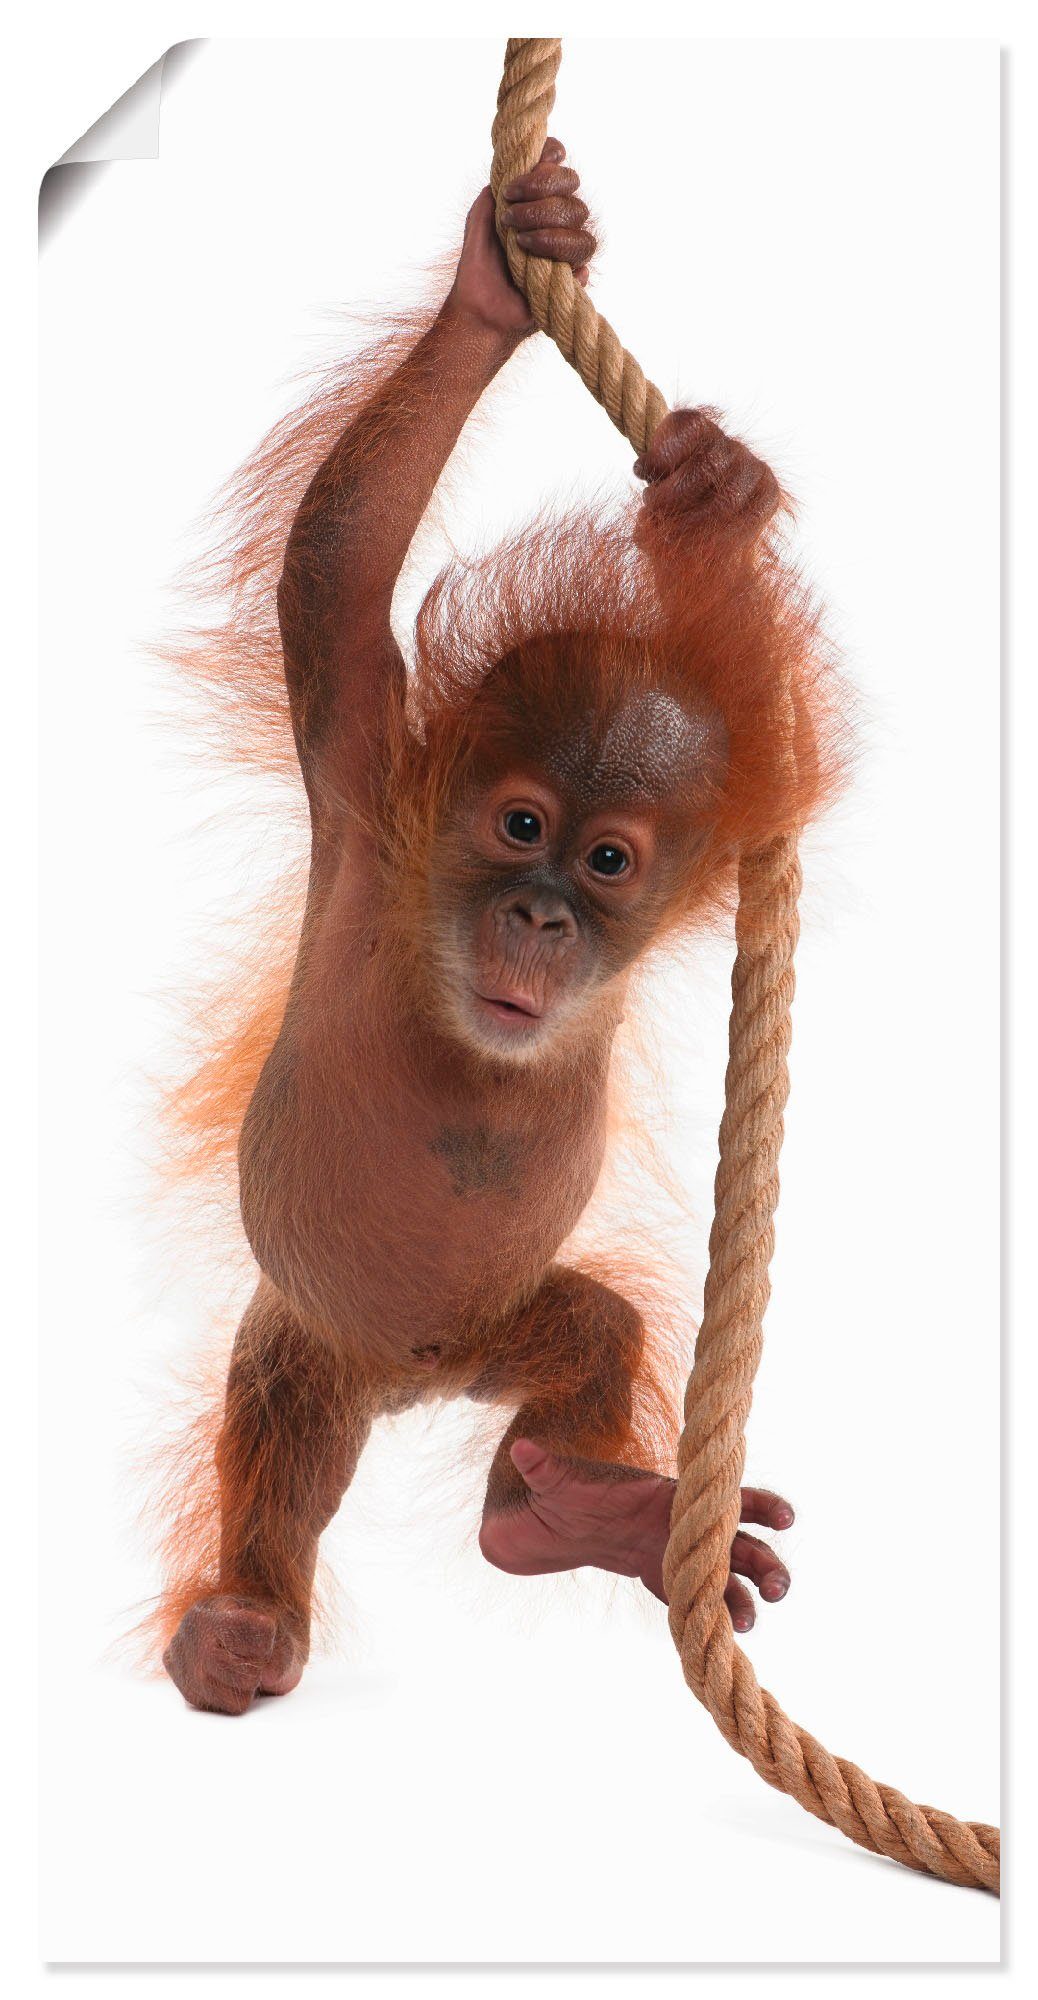 Artland Artprint Baby orang oetan hangt aan het touw I in vele afmetingen & productsoorten - artprint van aluminium / artprint voor buiten, artprint op linnen, poster, muursticker